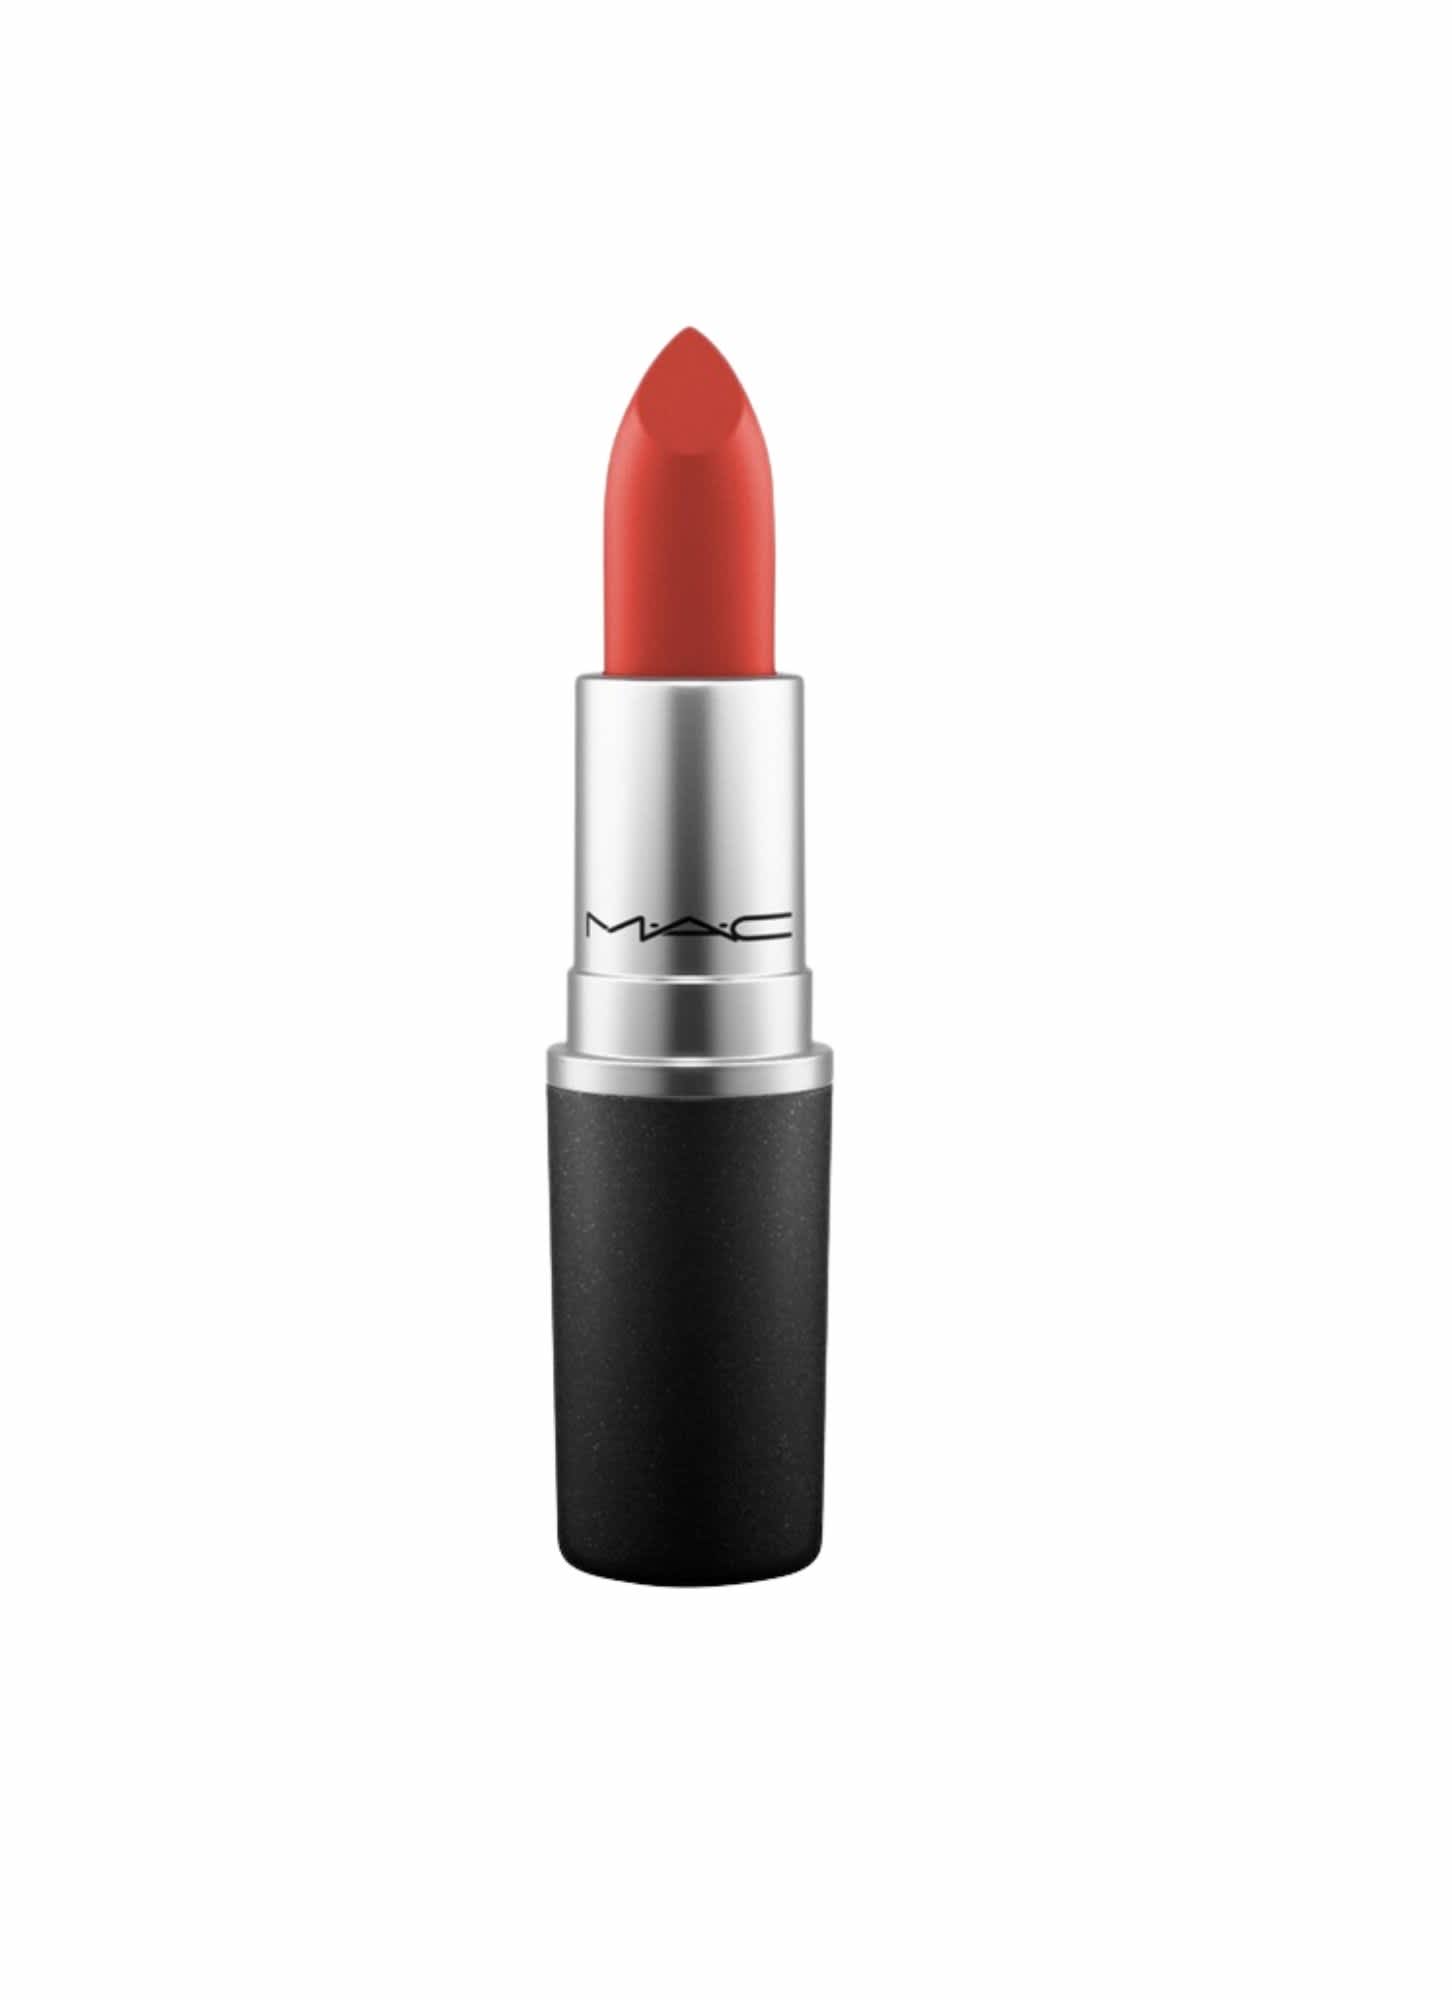 MAC Lipstick in "Chili"